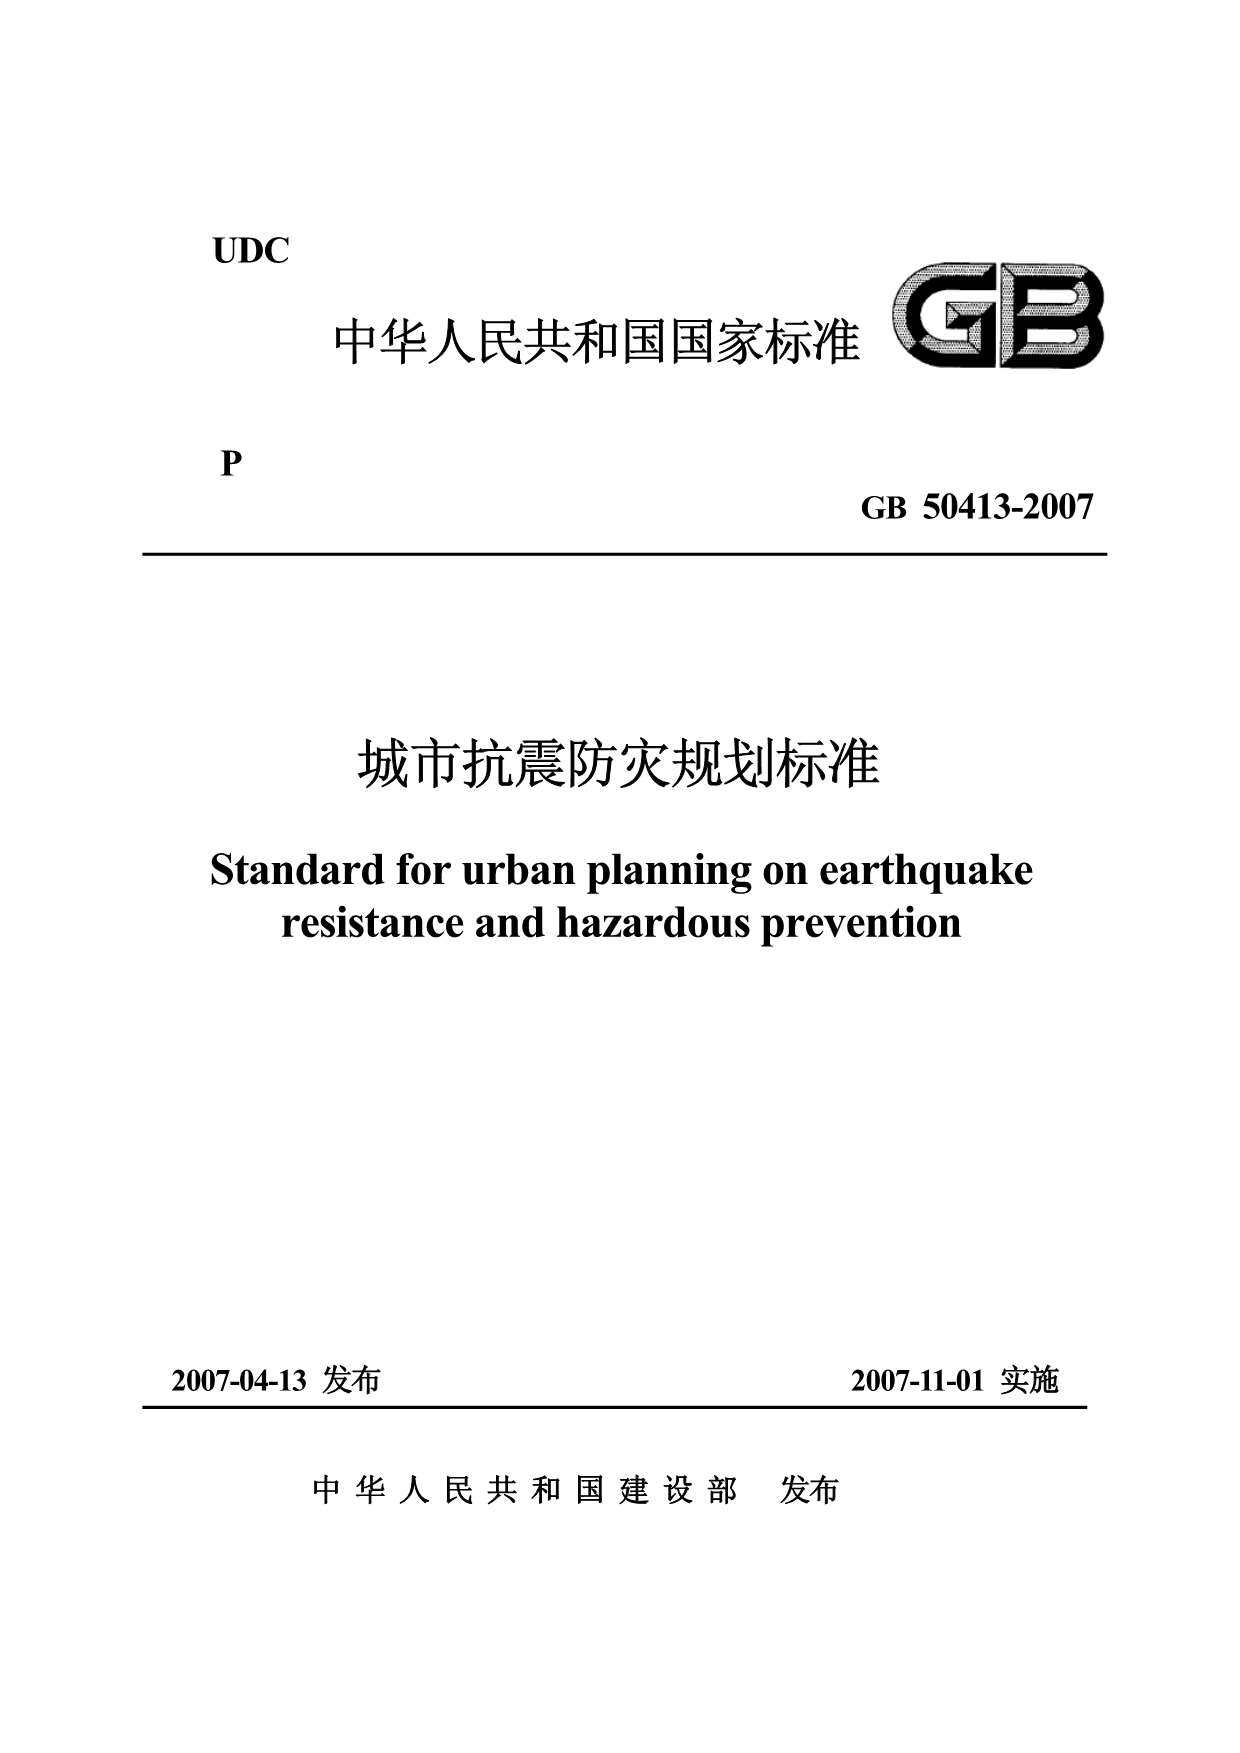 GB50413-2007城市抗震防灾规划标准